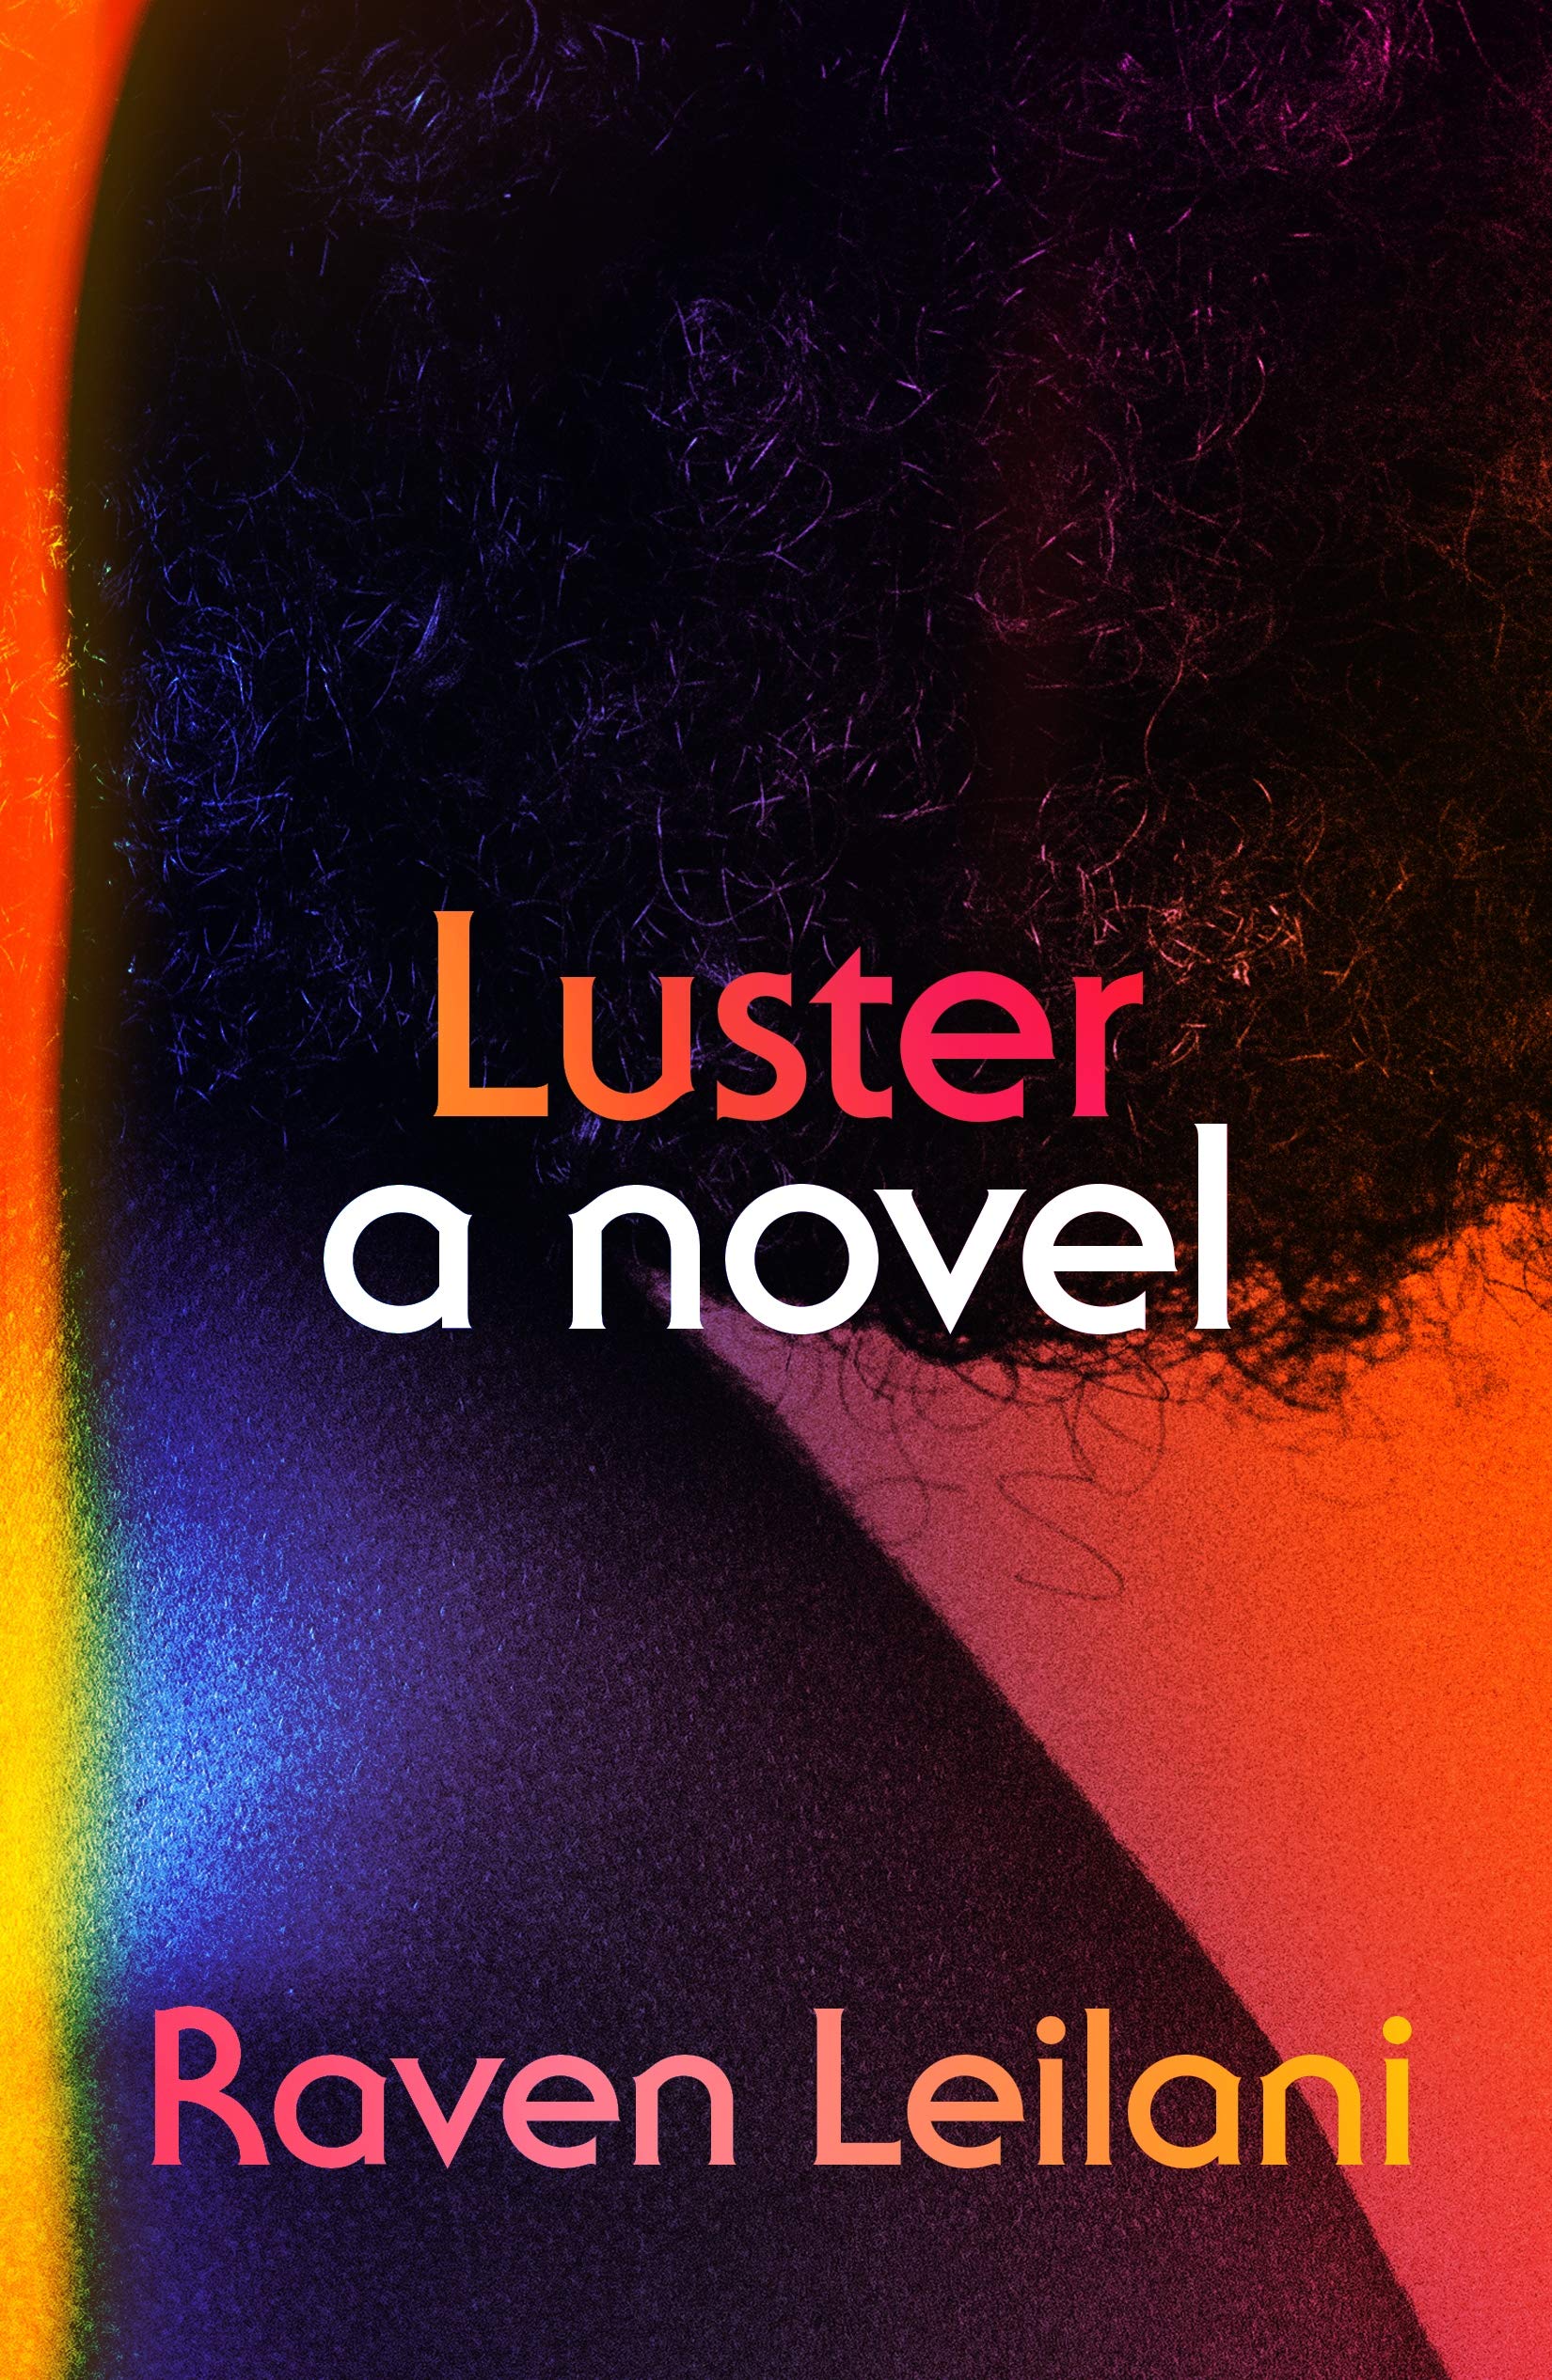 Luster (2021, Pan Macmillan)